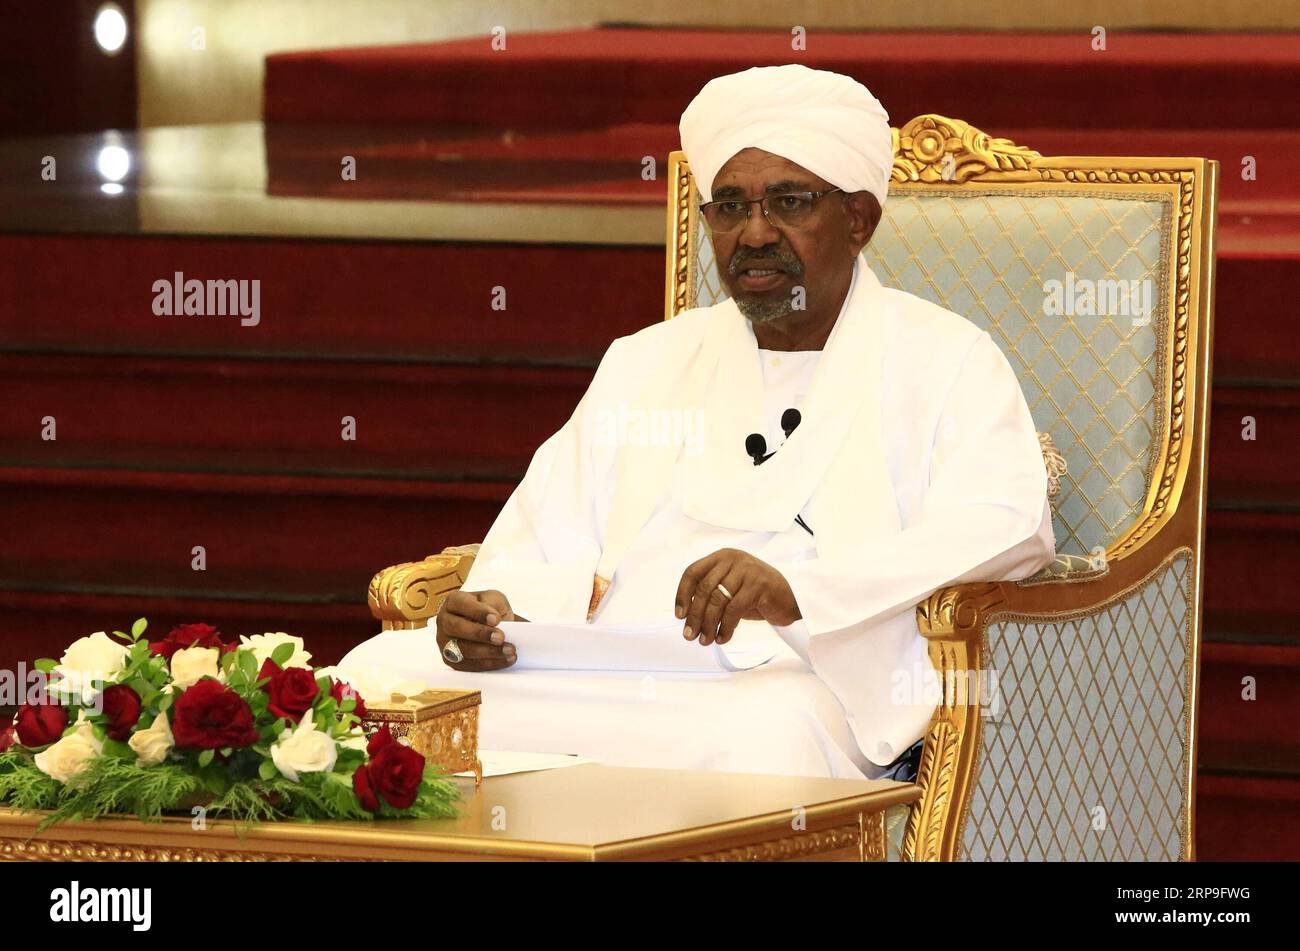 (190405) -- KHARTUM, 5. April 2019 -- der sudanesische Präsident Omar al-Bashir spricht am 5. April 2019 in Khartum (Sudan) vor dem übergeordneten Koordinierungsausschuss für die Weiterverfolgung der Umsetzung des Ergebnisses des Nationalen Dialogs. Der sudanesische Präsident Omar al-Bashir sagte am Freitag, dass Wahlen das einzige Mittel seien, um an die Macht zu kommen. ) SUDAN-KHARTUM-PRÄSIDENT-WAHLEN MohamedxKhidir PUBLICATIONxNOTxINxCHN Stockfoto